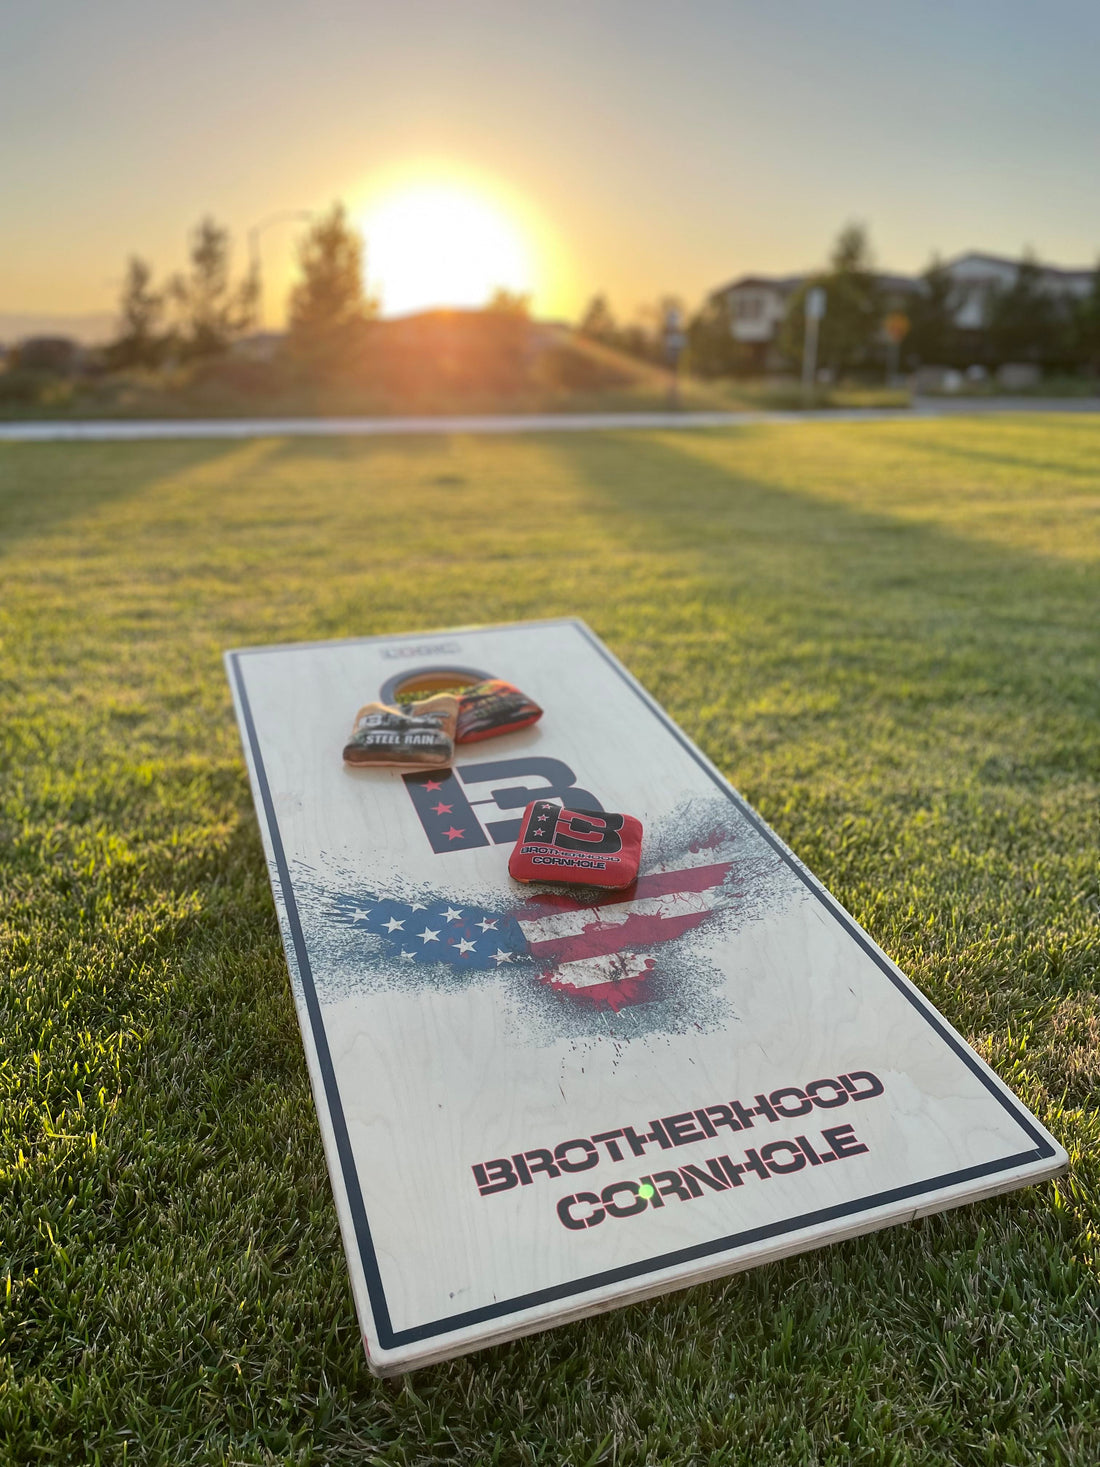 Cornhole: America's Favorite Lawn Game